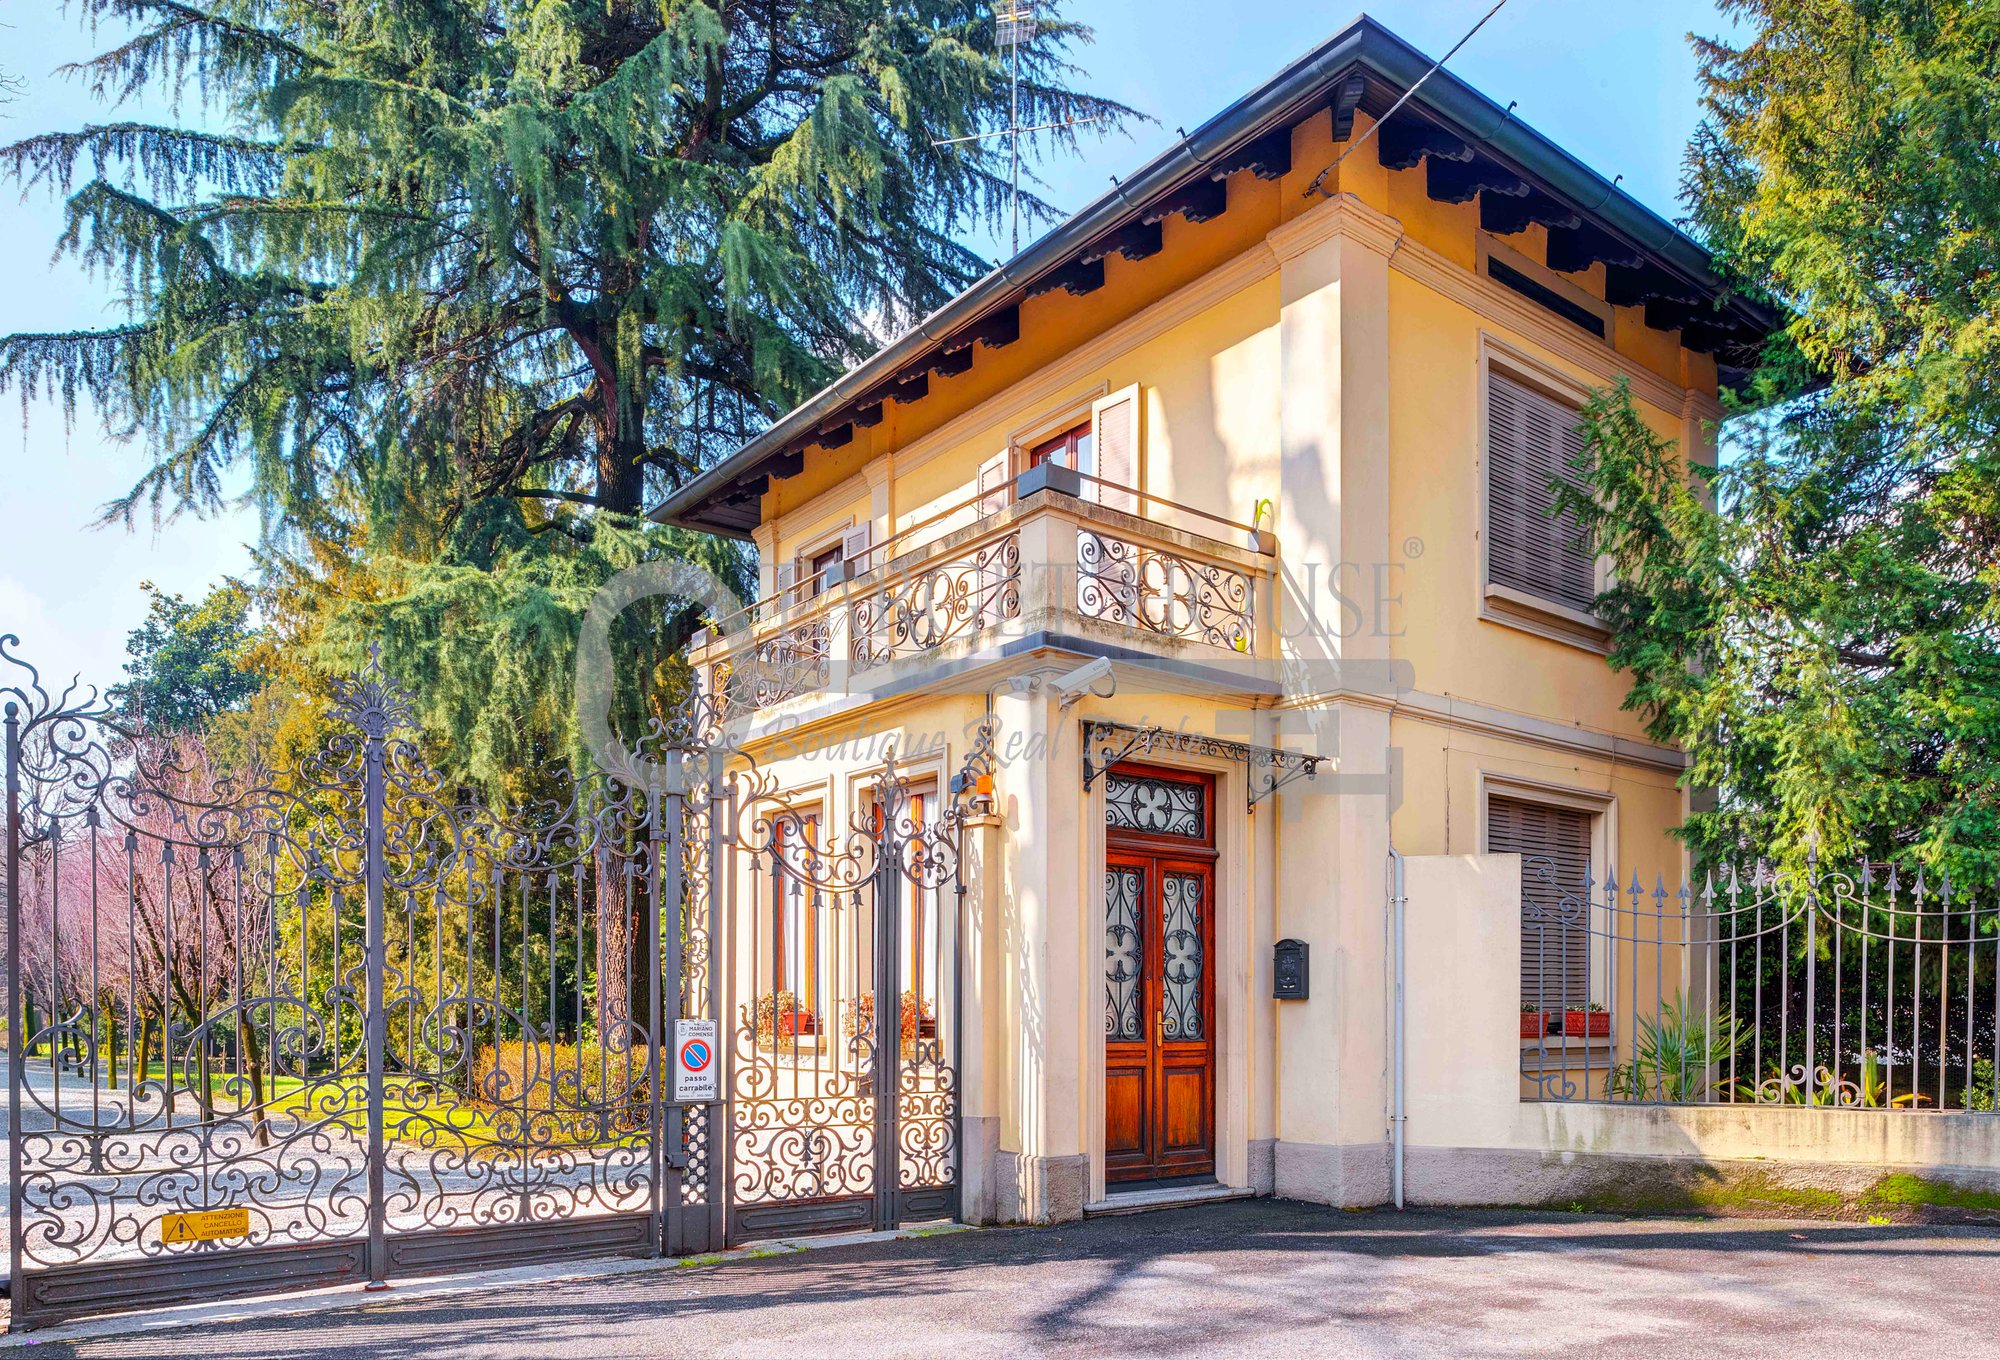 Exclusive Villa in Mariano Comense, Italy for sale (10692770)